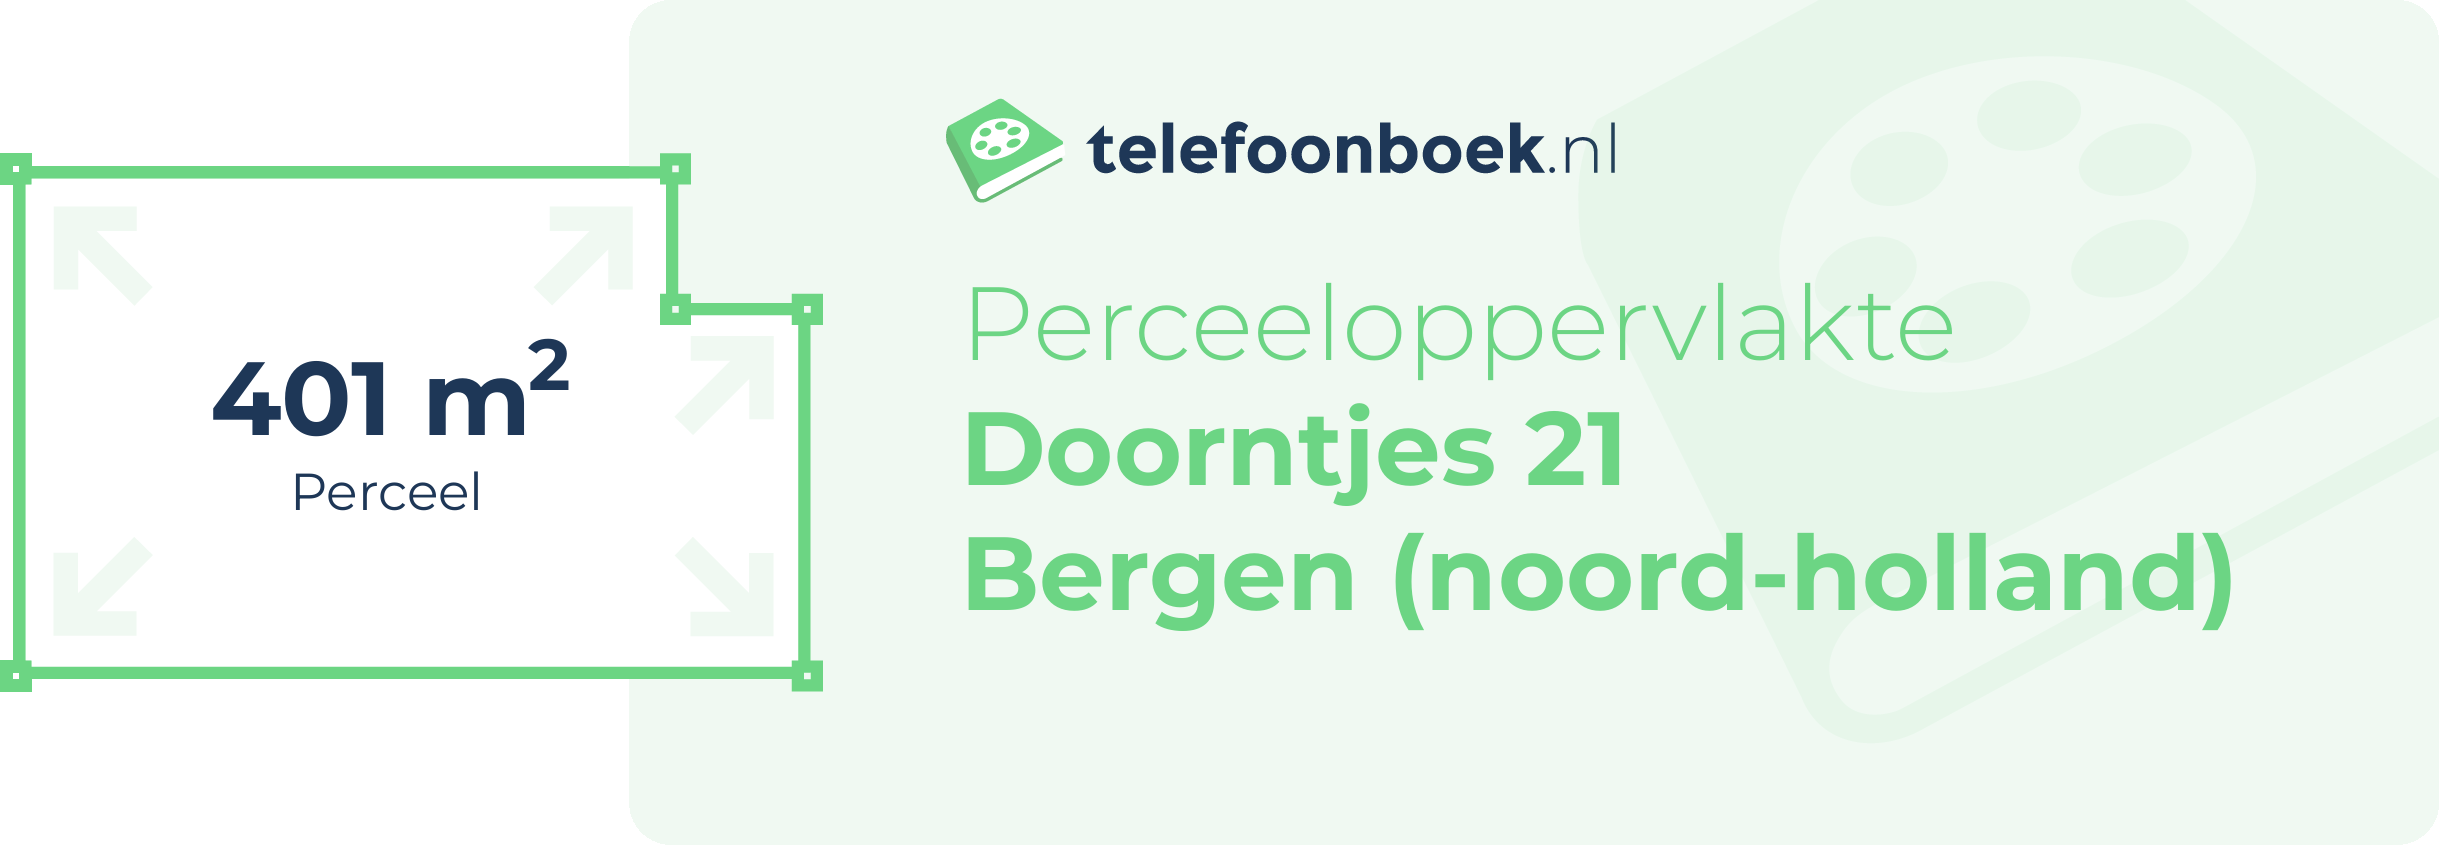 Perceeloppervlakte Doorntjes 21 Bergen (Noord-Holland)